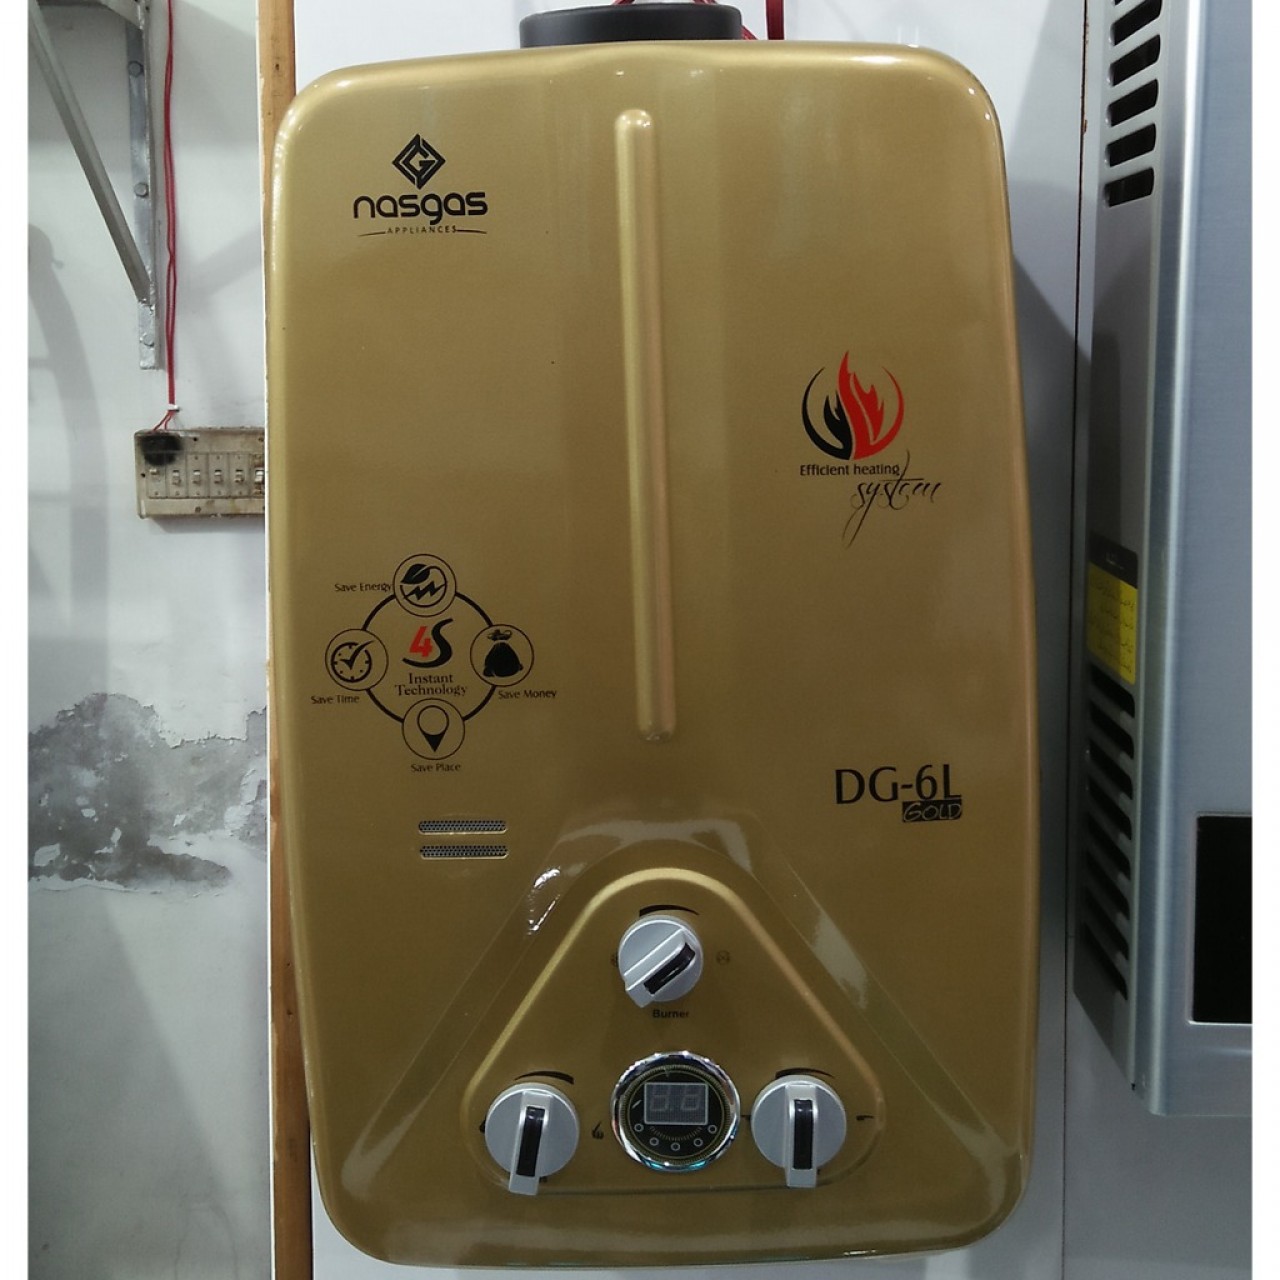 Nasgas DG-7L Gold Water Geyser - Efficient Heating System - 8 Liter